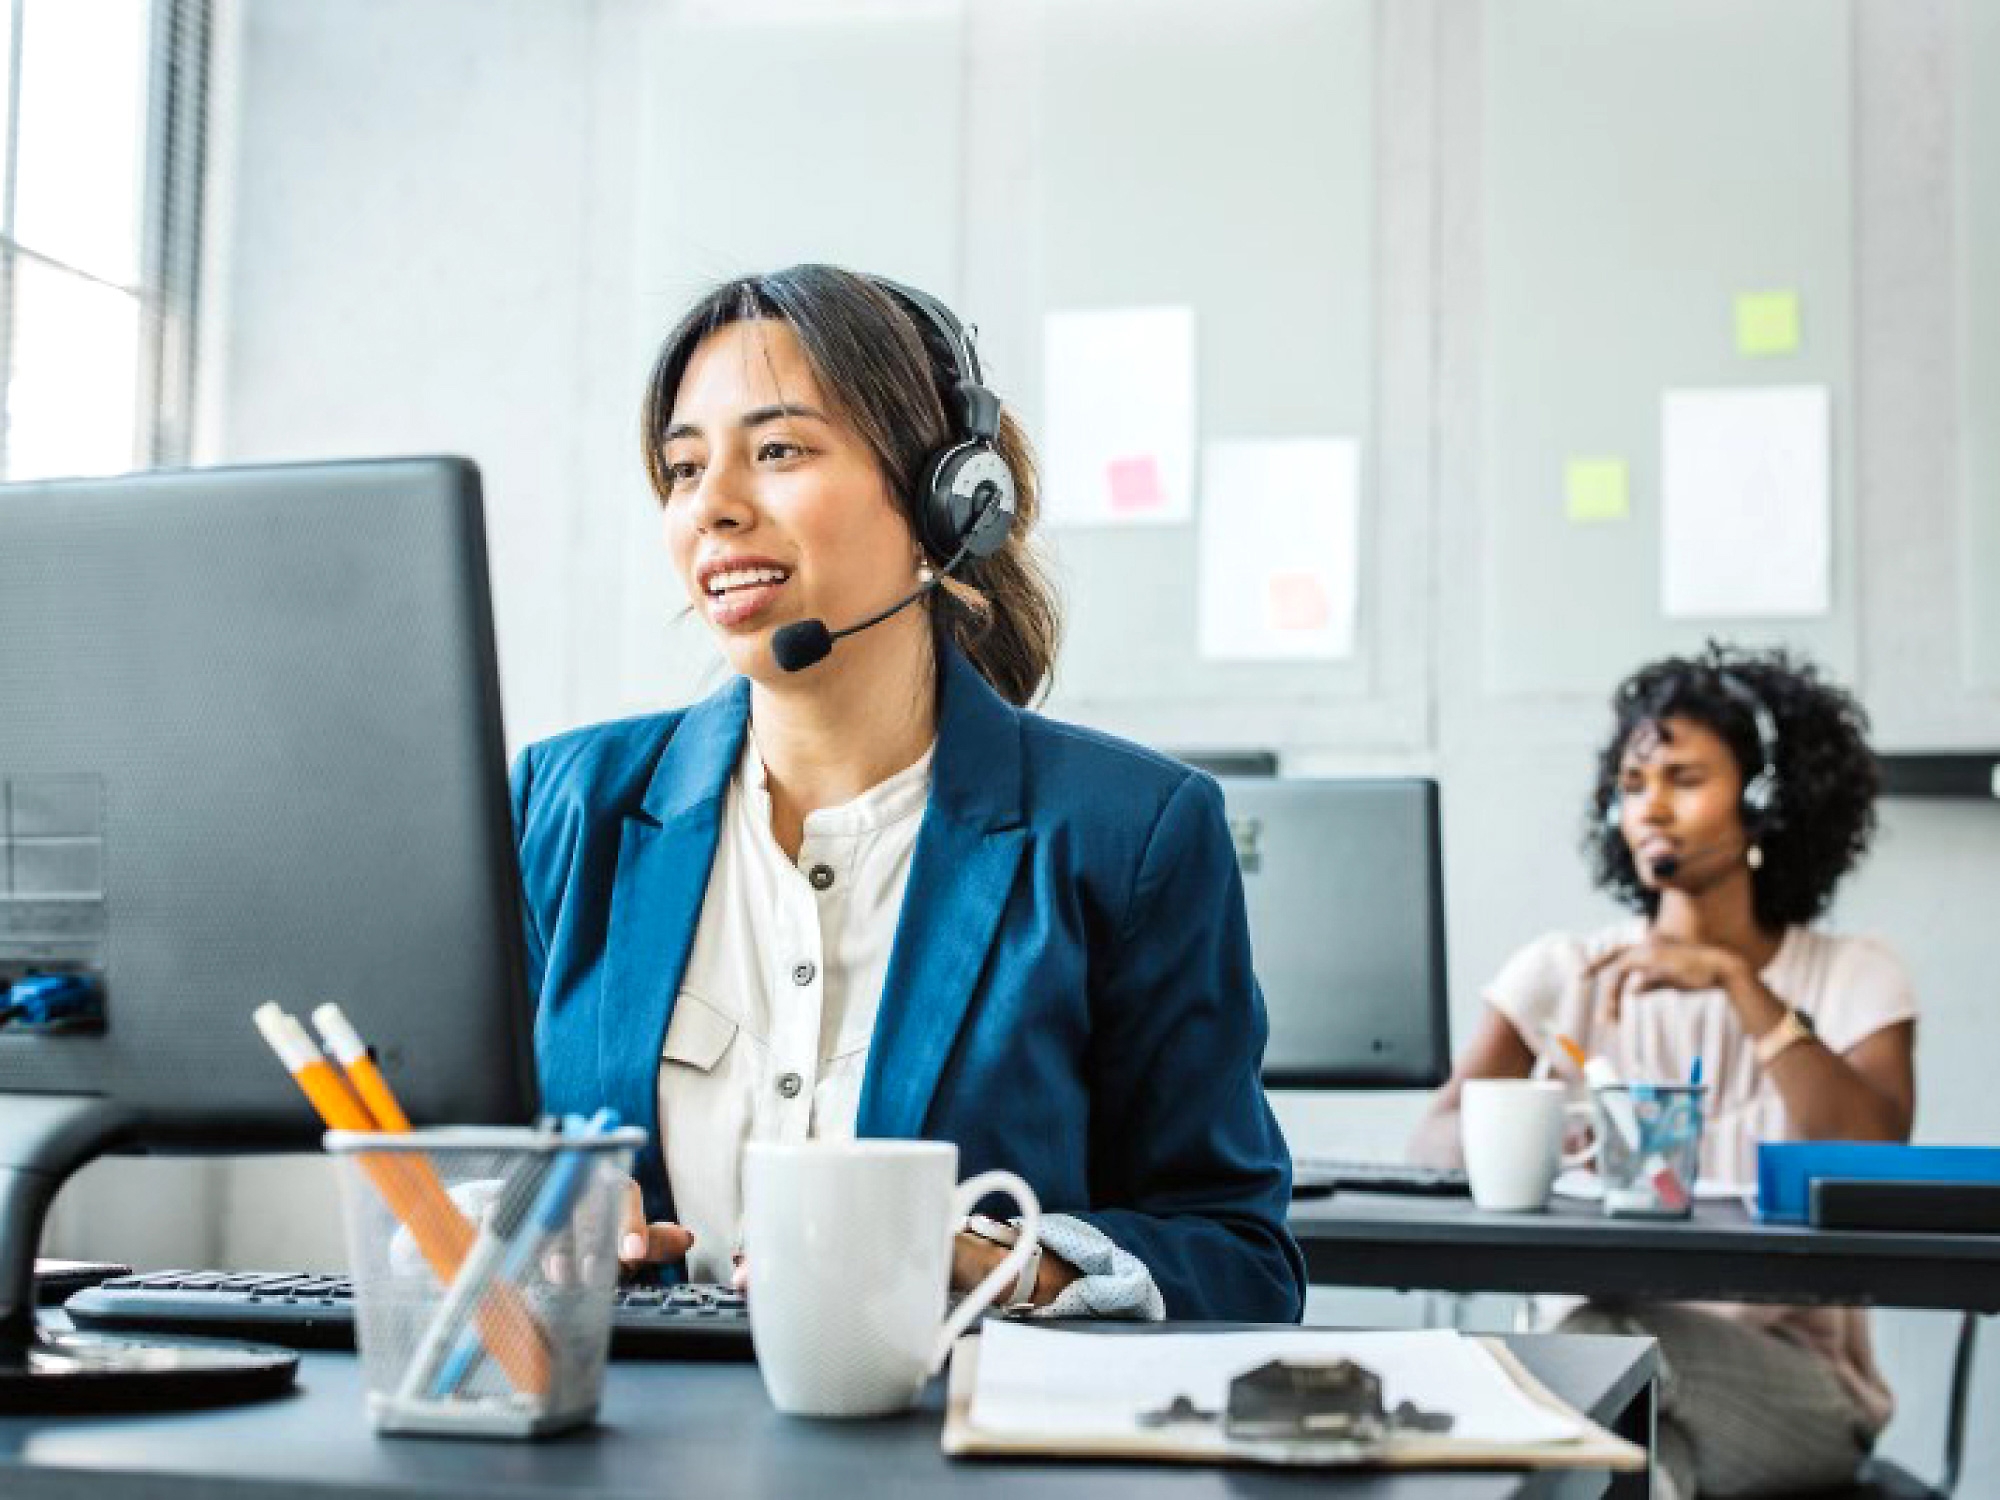 Een medewerker van de klantenservice die een headset draagt en glimlacht terwijl ze op haar computer in een kantooromgeving werkt.